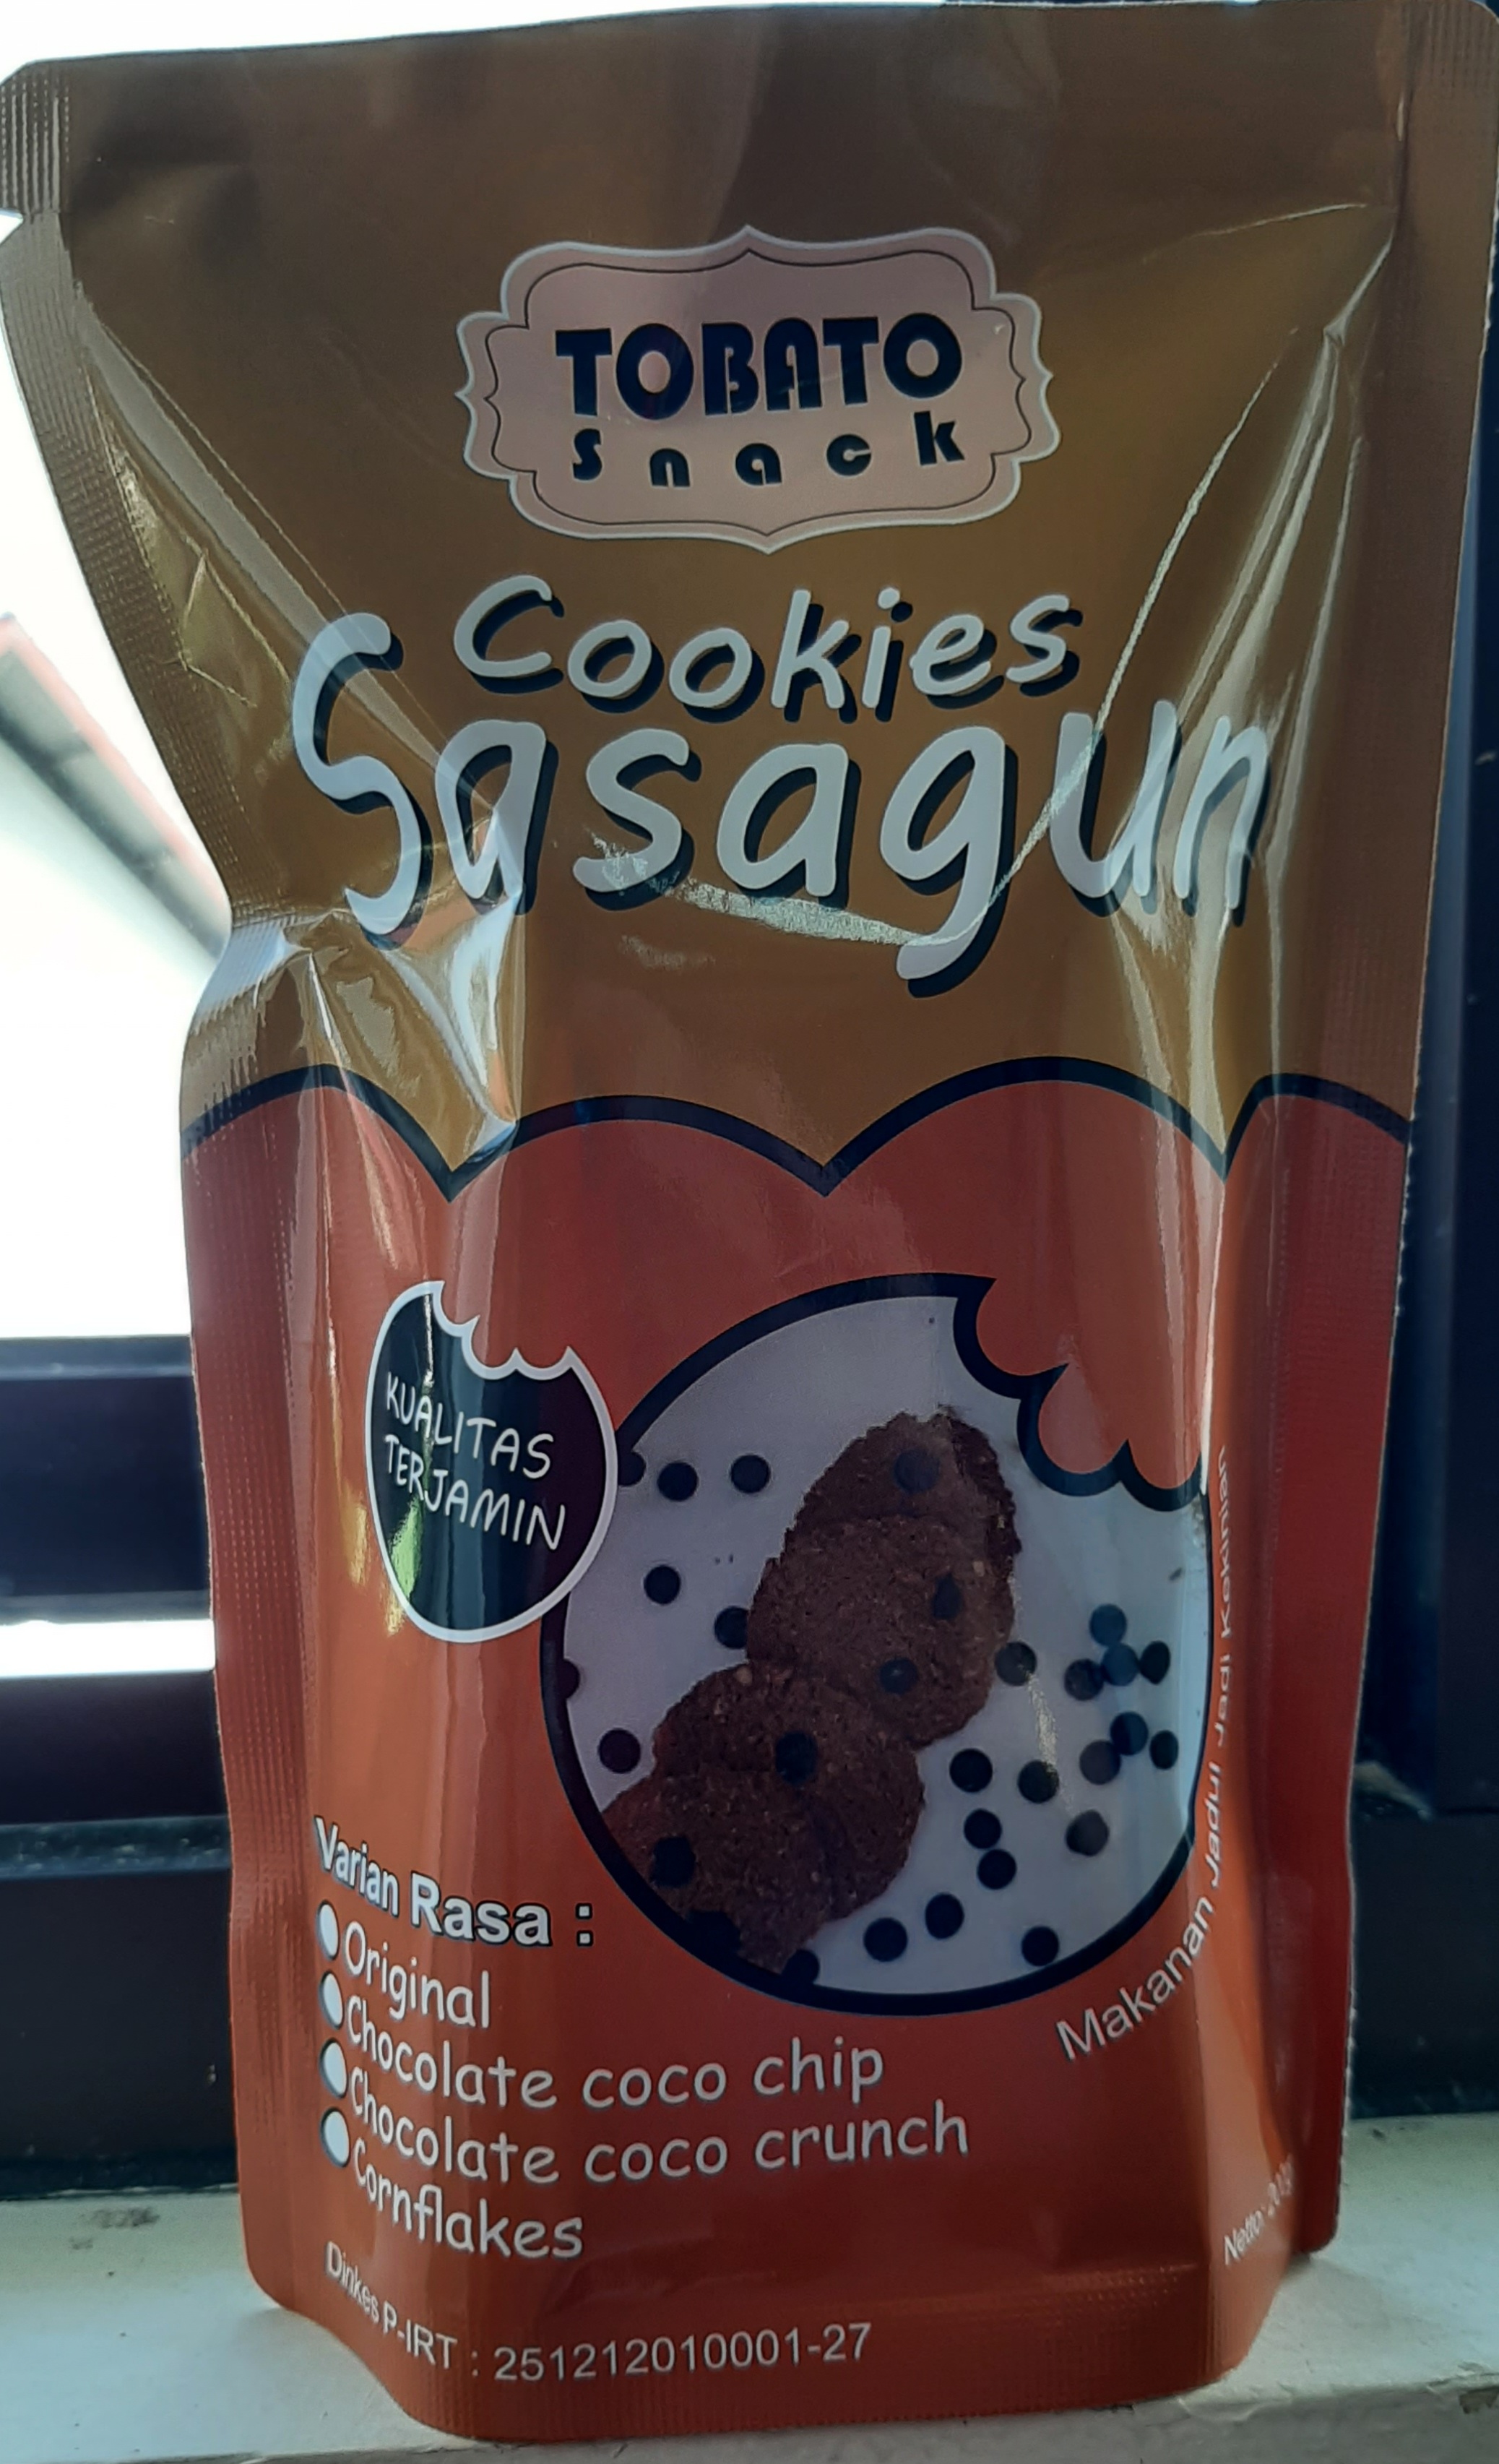 Cookies Sasagun corn flakes